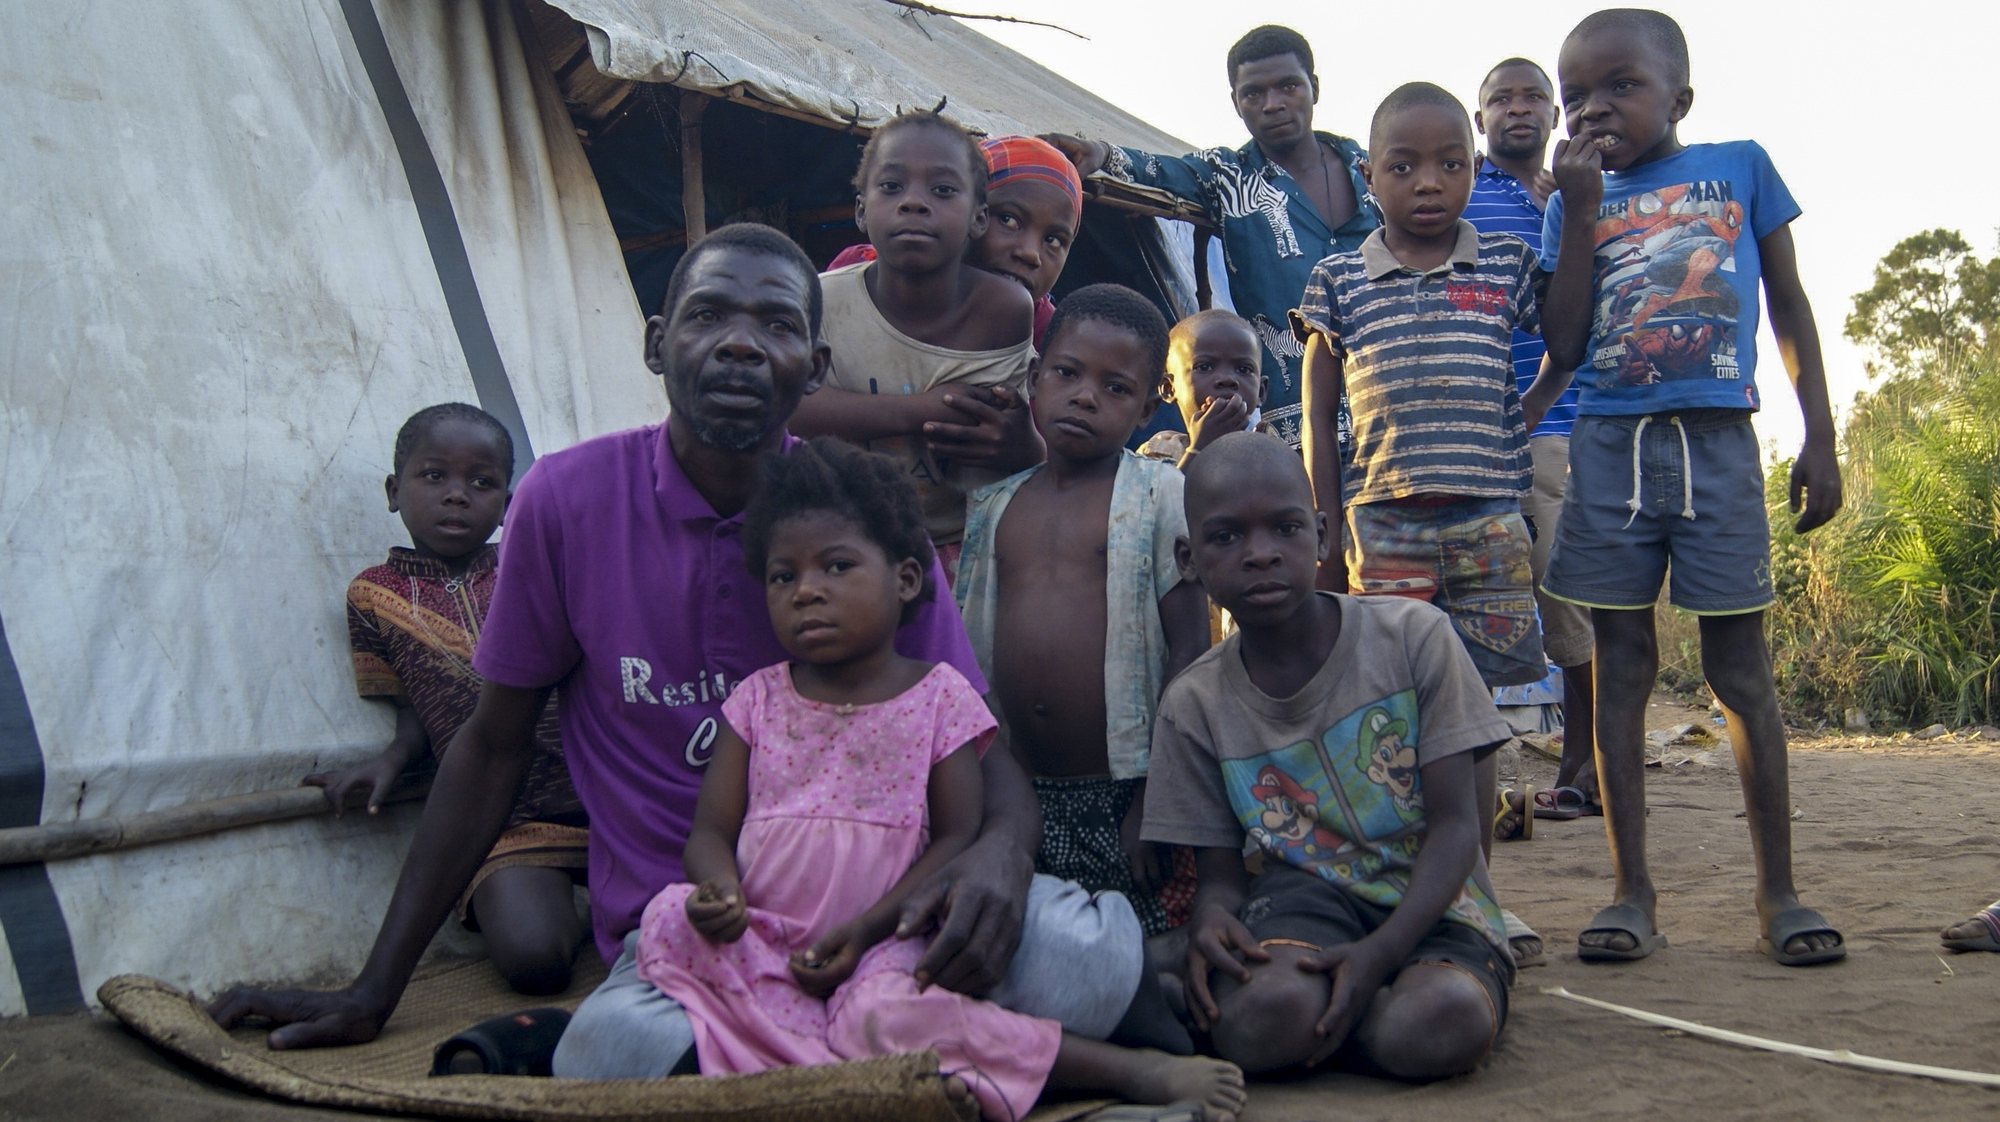 Abu Sefo (2-E), 52 anos, fugiu de Mocímboa da Praia há um ano com sua família, posa para a fotografia acompanhado por crianças num dos campos de acolhimento de deslocados em Metuge, espaço que alberga deslocados que fogem da violência armada no norte de Moçambique, Cabo Delgado, Moçambique, 16 de agosto de 2021. Na sequência dos ataques, que aterrorizam a província de Cabo Delgado desde 2017, há mais de 3.100 mortes, segundo o projeto de registo de conflitos ACLED, e mais de 817 mil deslocados, segundo as autoridades moçambicanas. (ACOMPANHA TEXTO DA LUSA DO DIA 17 DE AGOSTO DE 2021). LUÍSA NHANTUMBO/LUSA